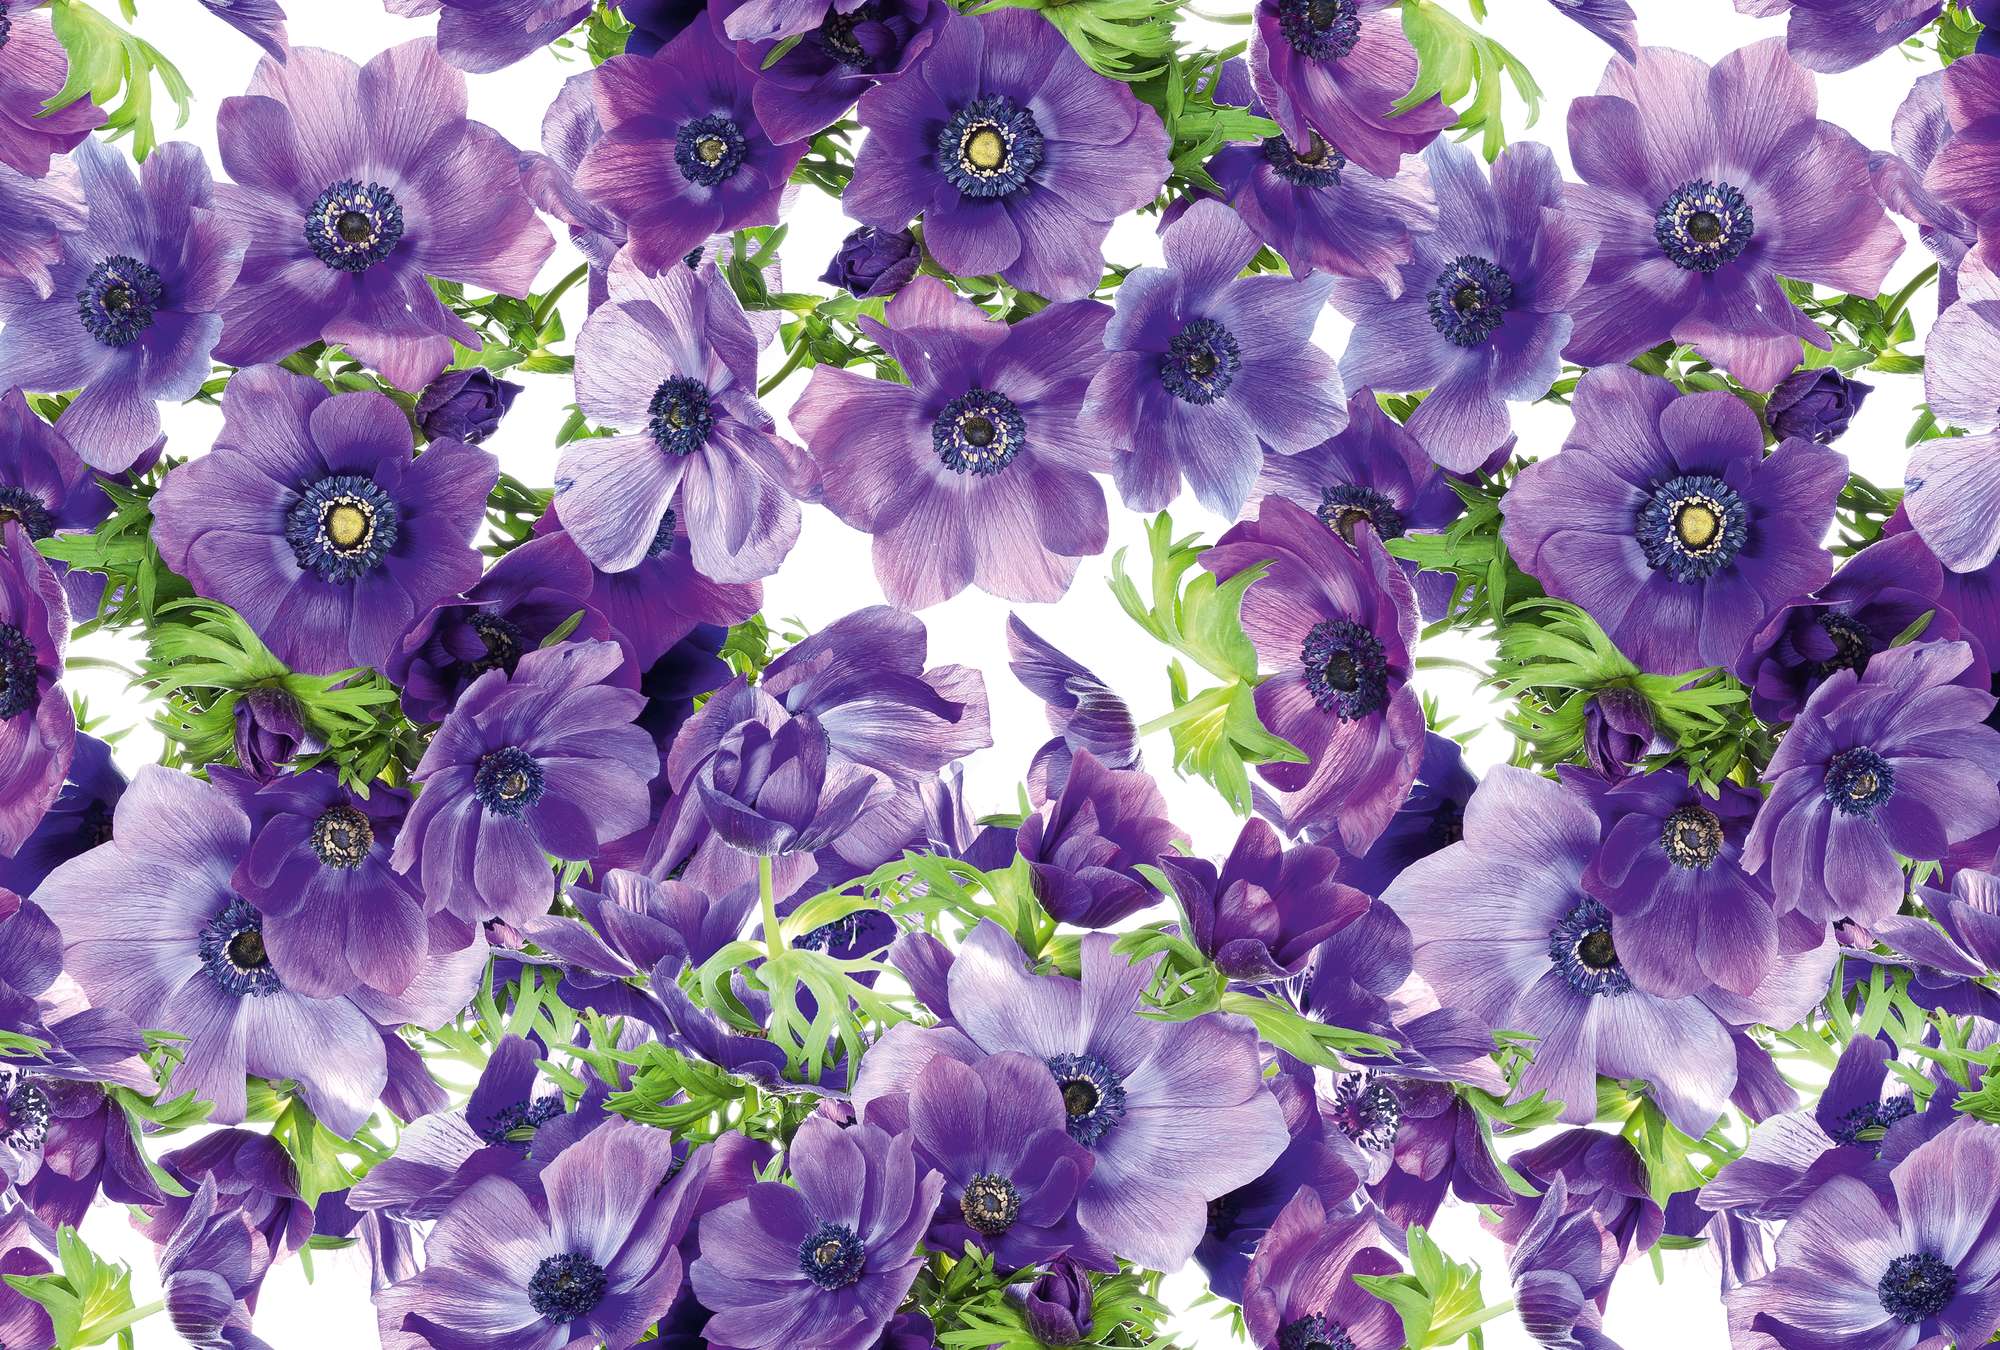             Muurschildering bloemen paarse bloesems in XXL formaat
        